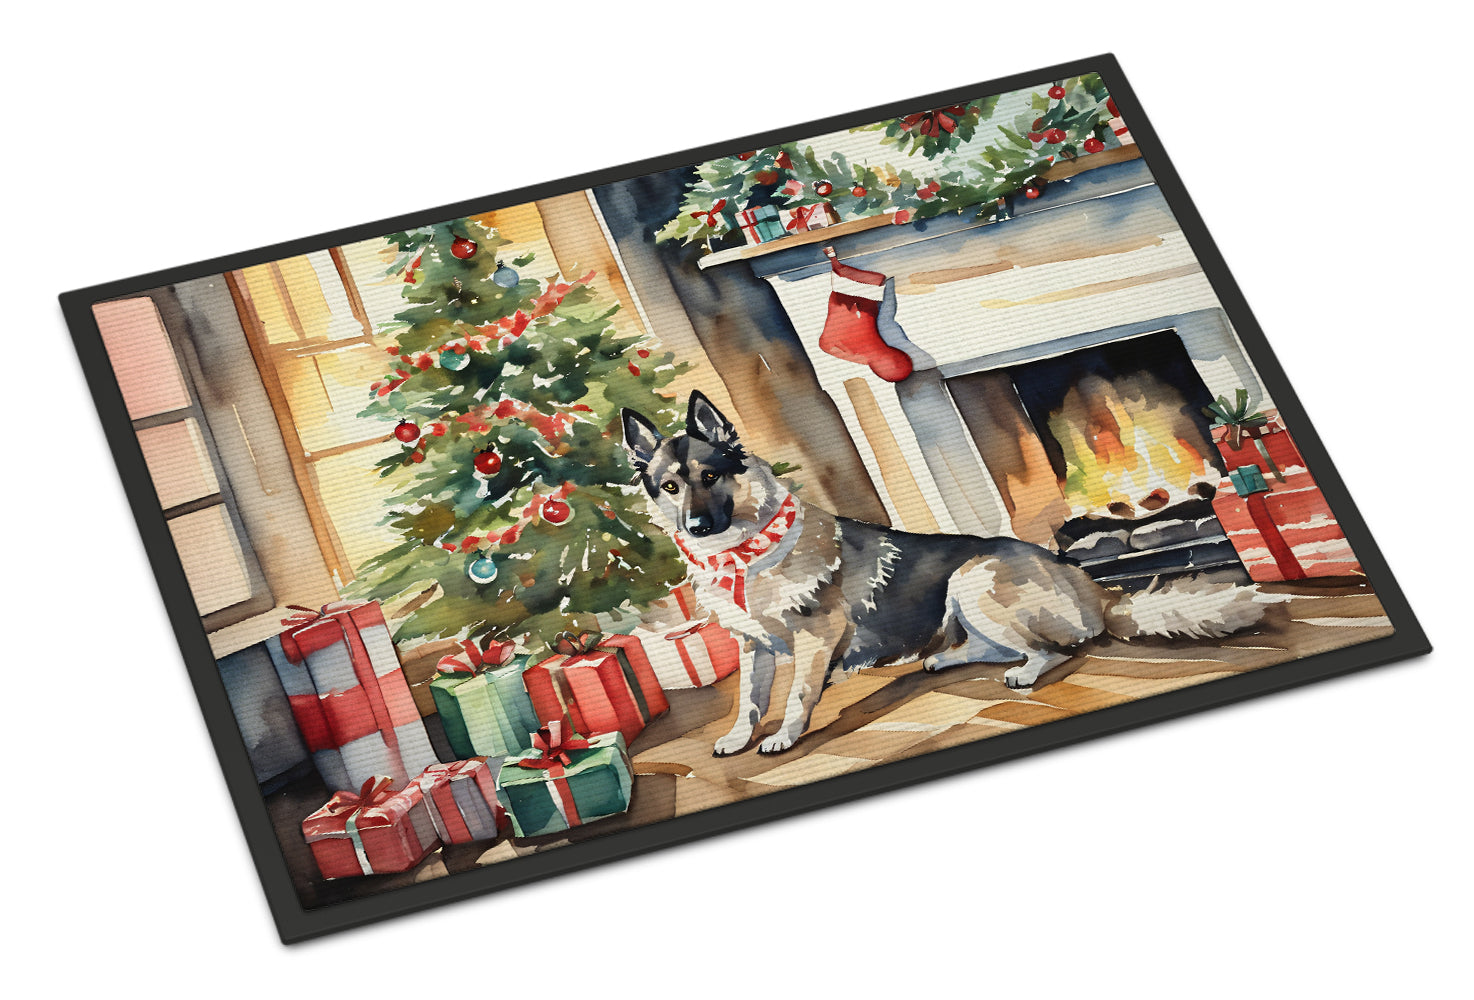 Buy this Norwegian Elkhound Cozy Christmas Doormat